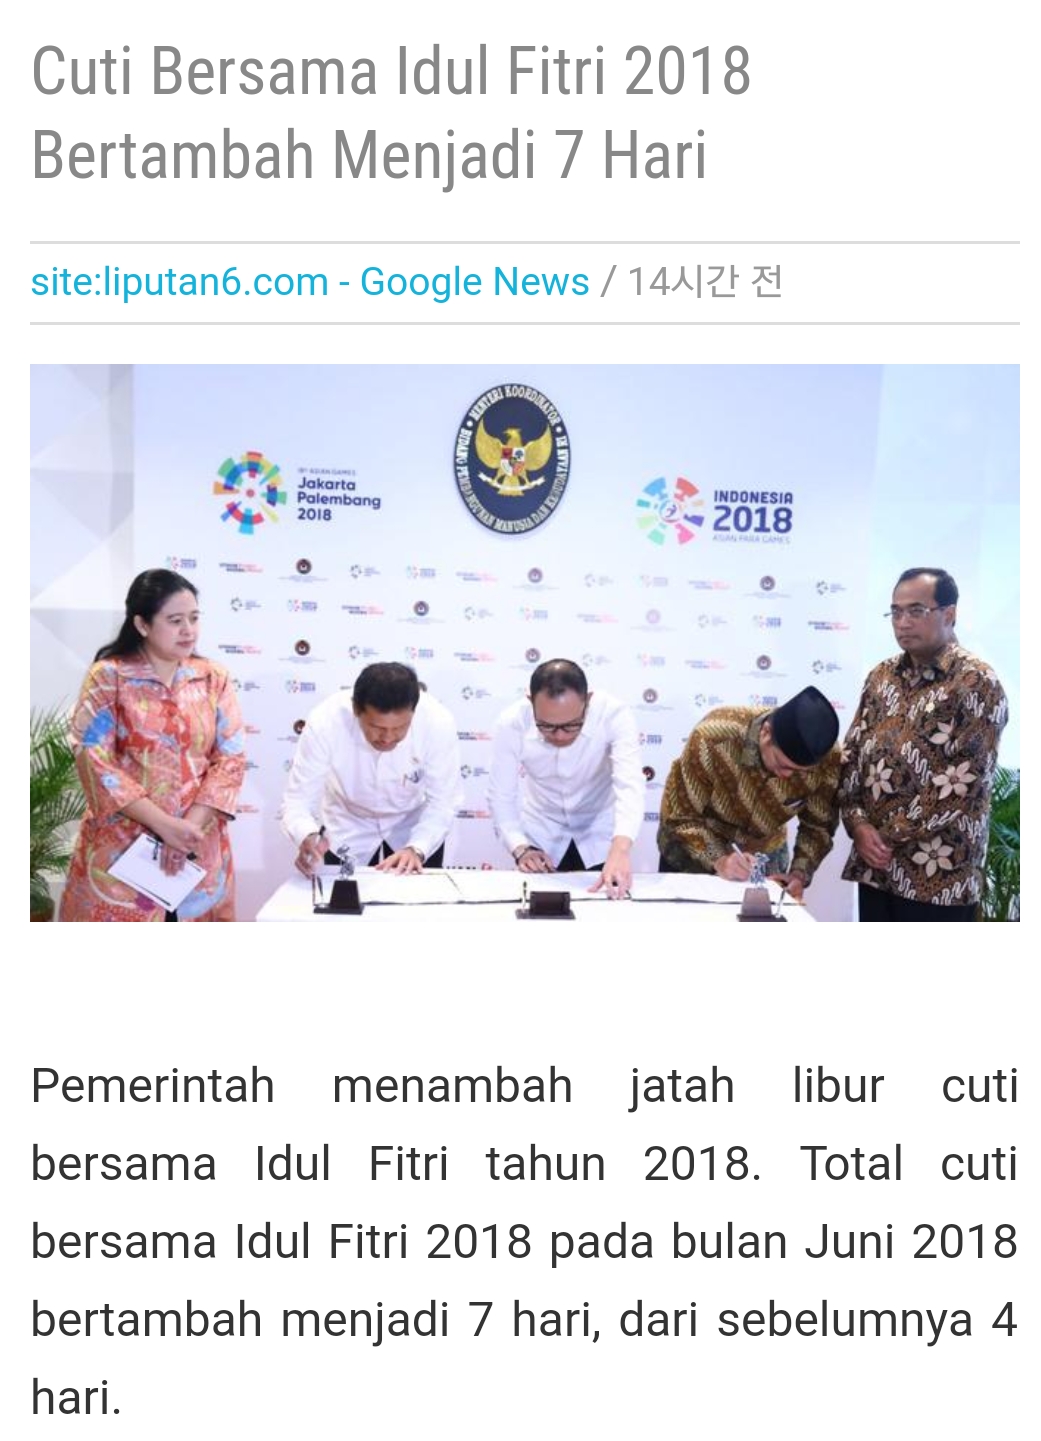 인도네시아 종교부 노동부 행정개혁부 장관은 이슬람 르바란 이둘피뜨리(Hari Raya Idul Fitri 2018) 연휴를 오는 6월 11일부터 20일까지 10일간이라고 발표